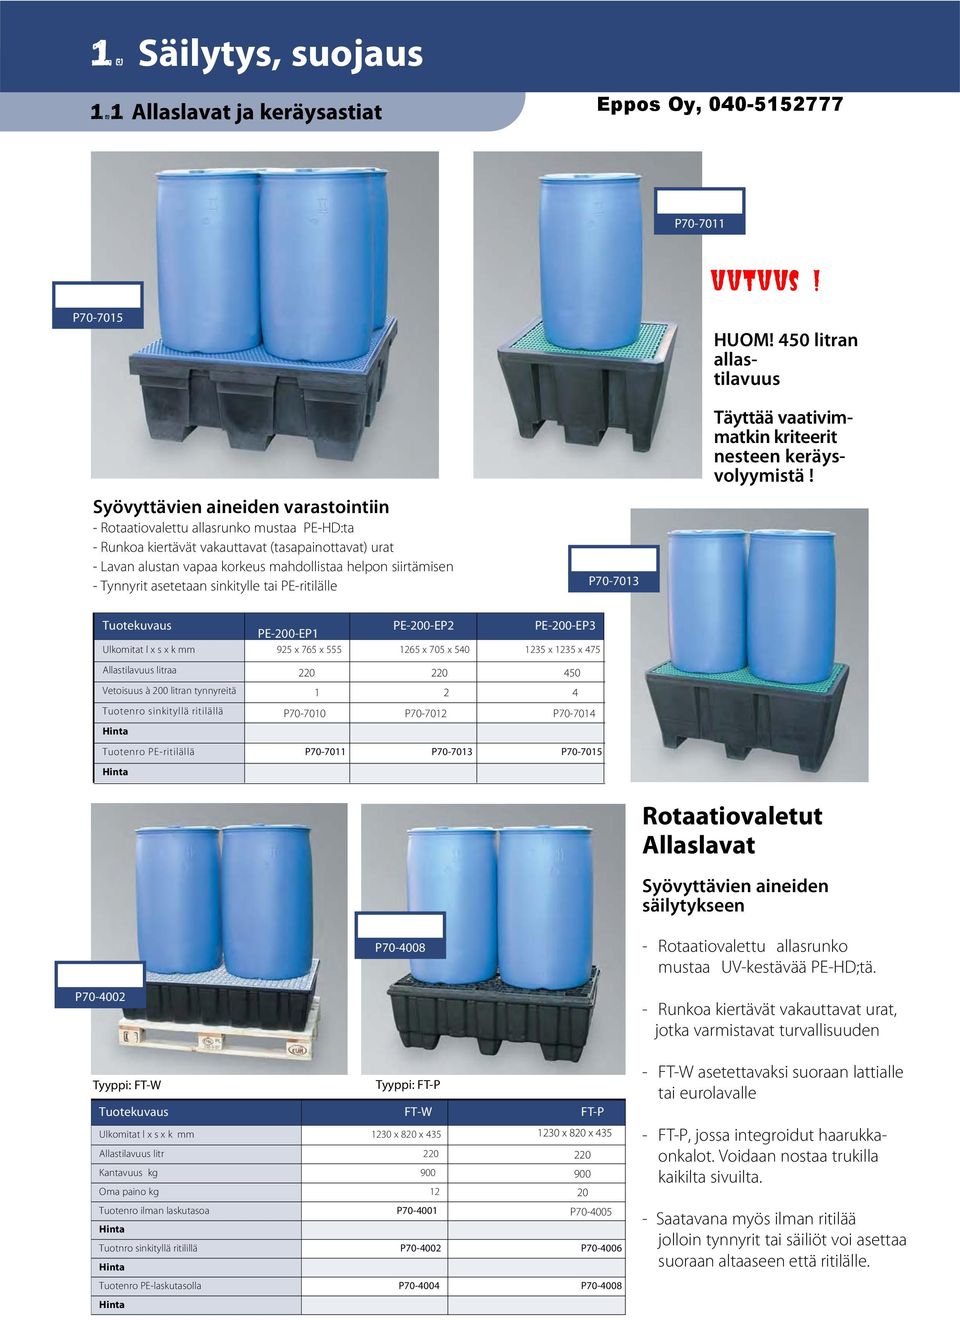 helpon siirtämisen Tynnyrit asetetaan sinkitylle tai PEritilälle P707013 Täyttää vaativimmatkin kriteerit nesteen keräysvolyymistä!